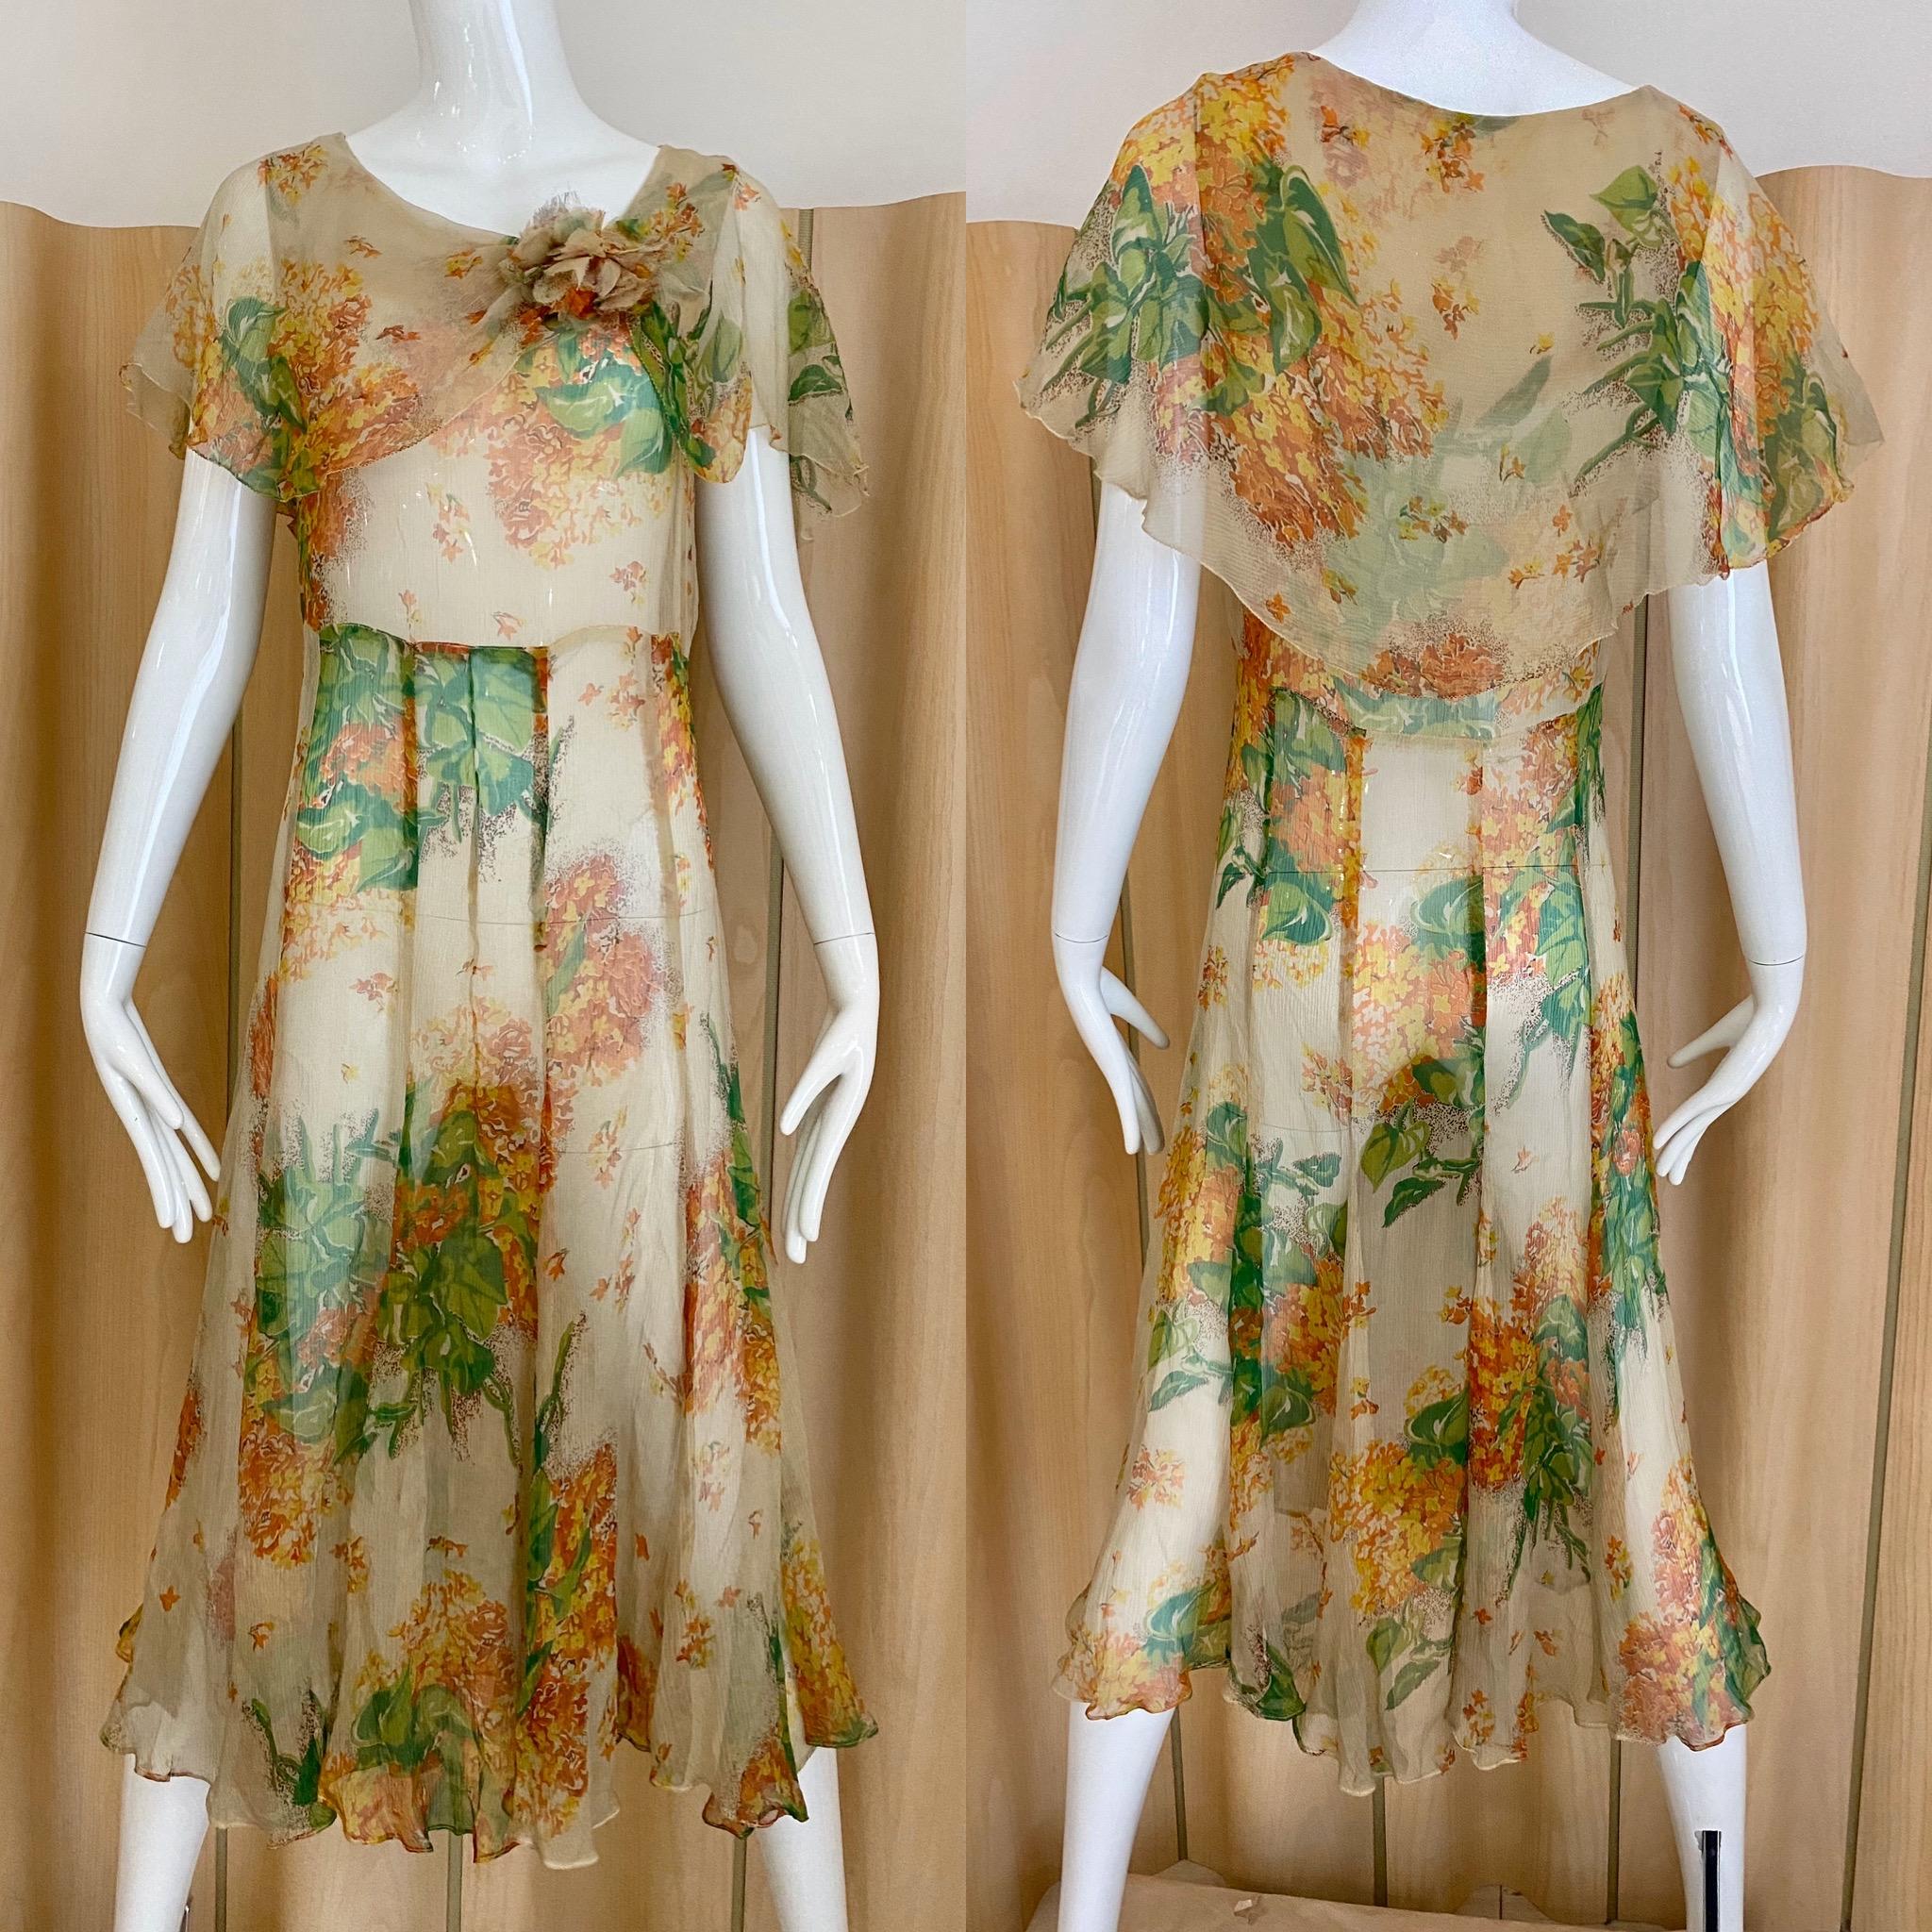 Vintage 30er Jahre creme, grün, orange Blumendruck Seide Tag Kleid.
Passform Größe 2/4